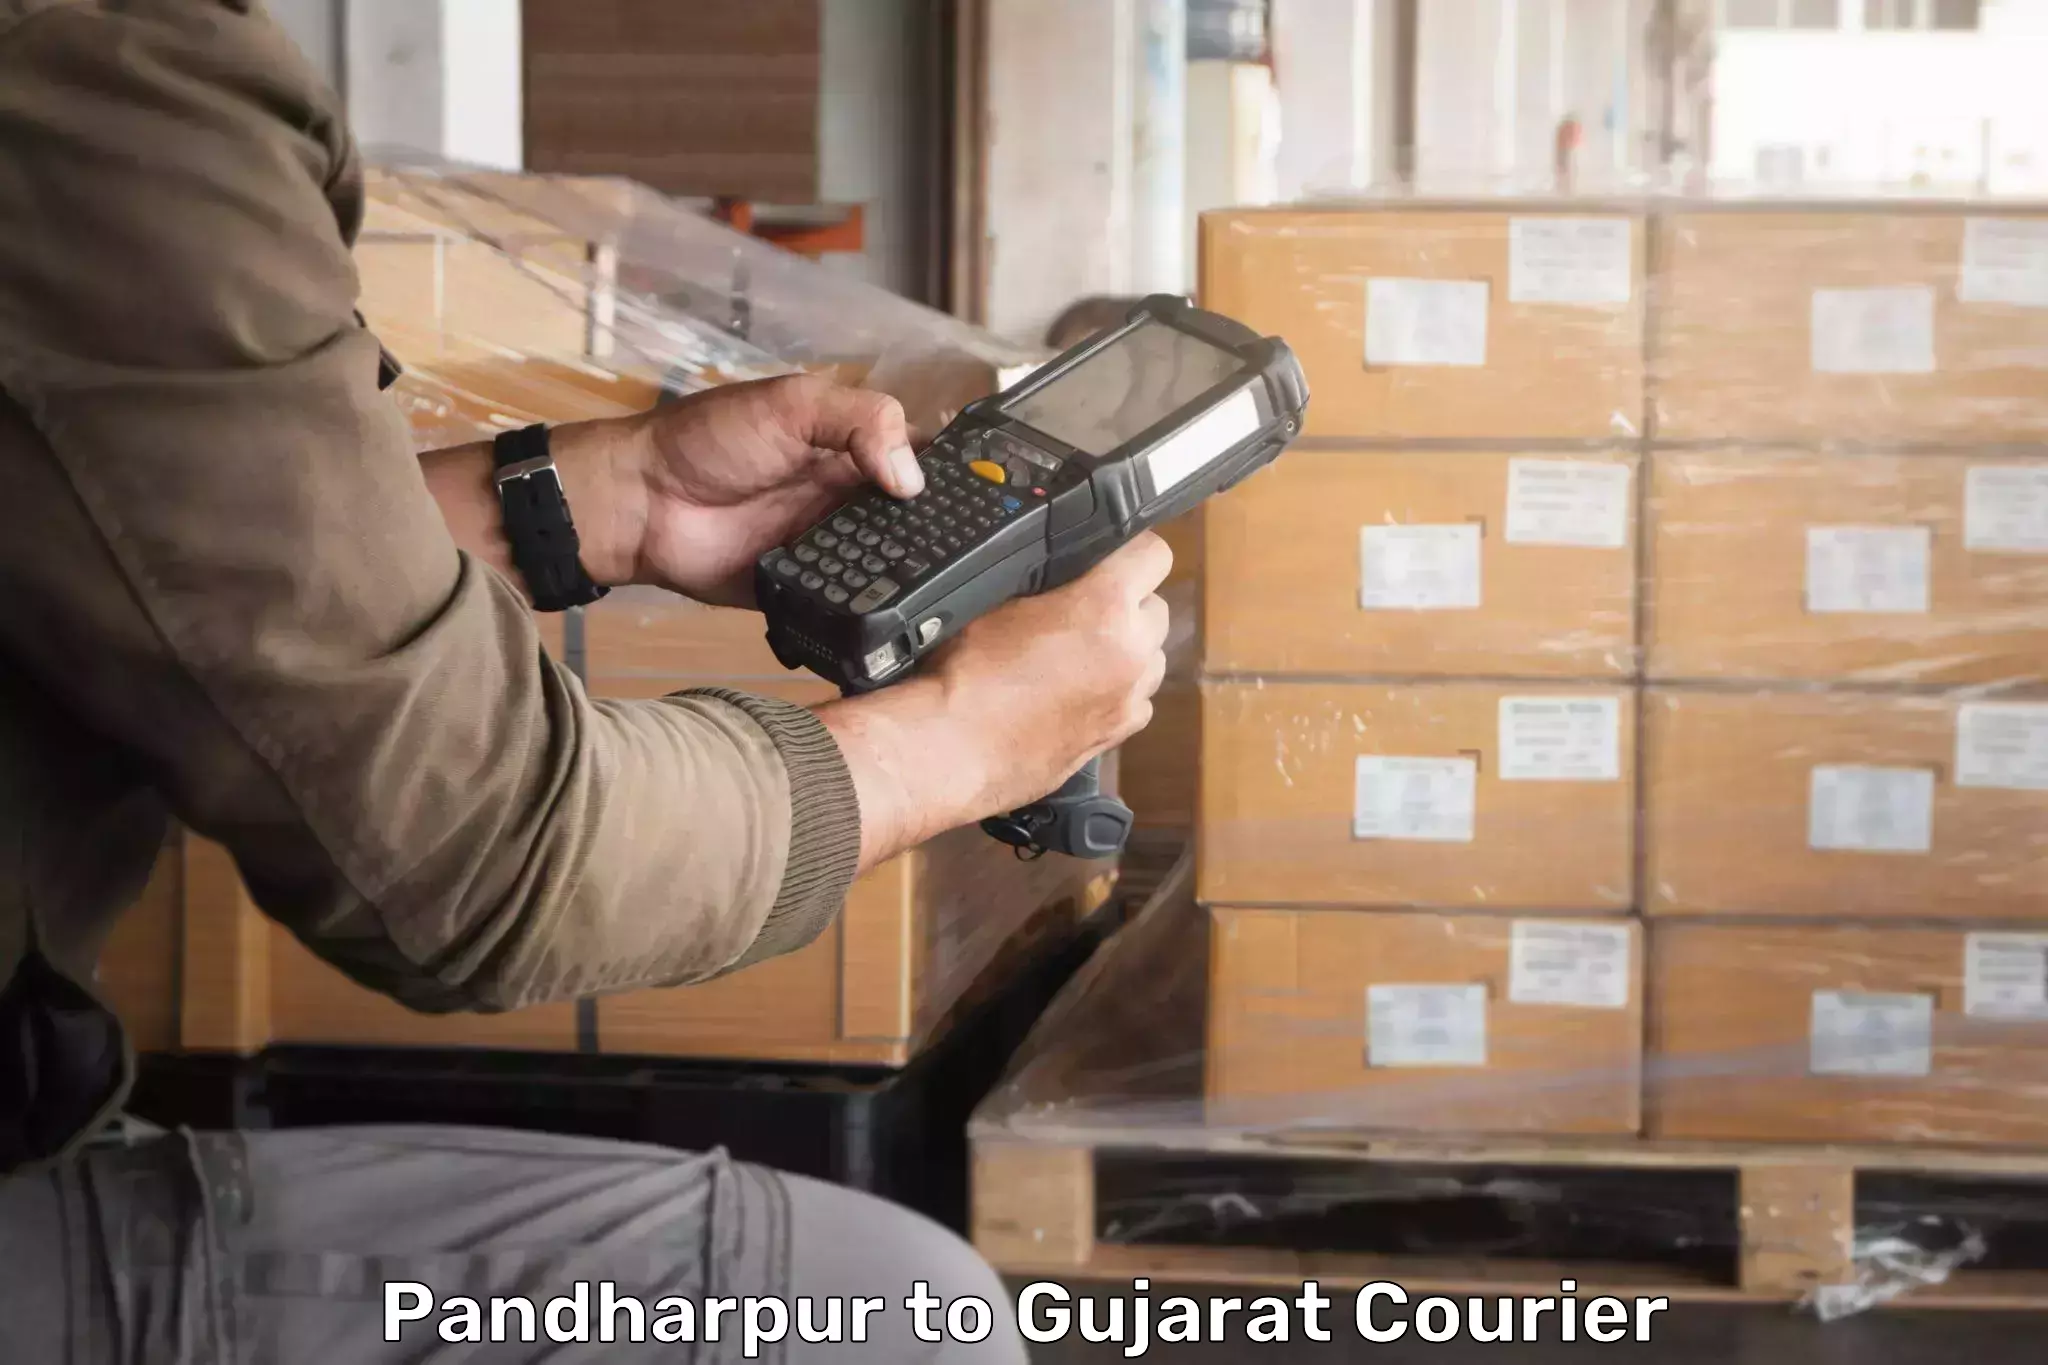 High-speed parcel service Pandharpur to Gujarat